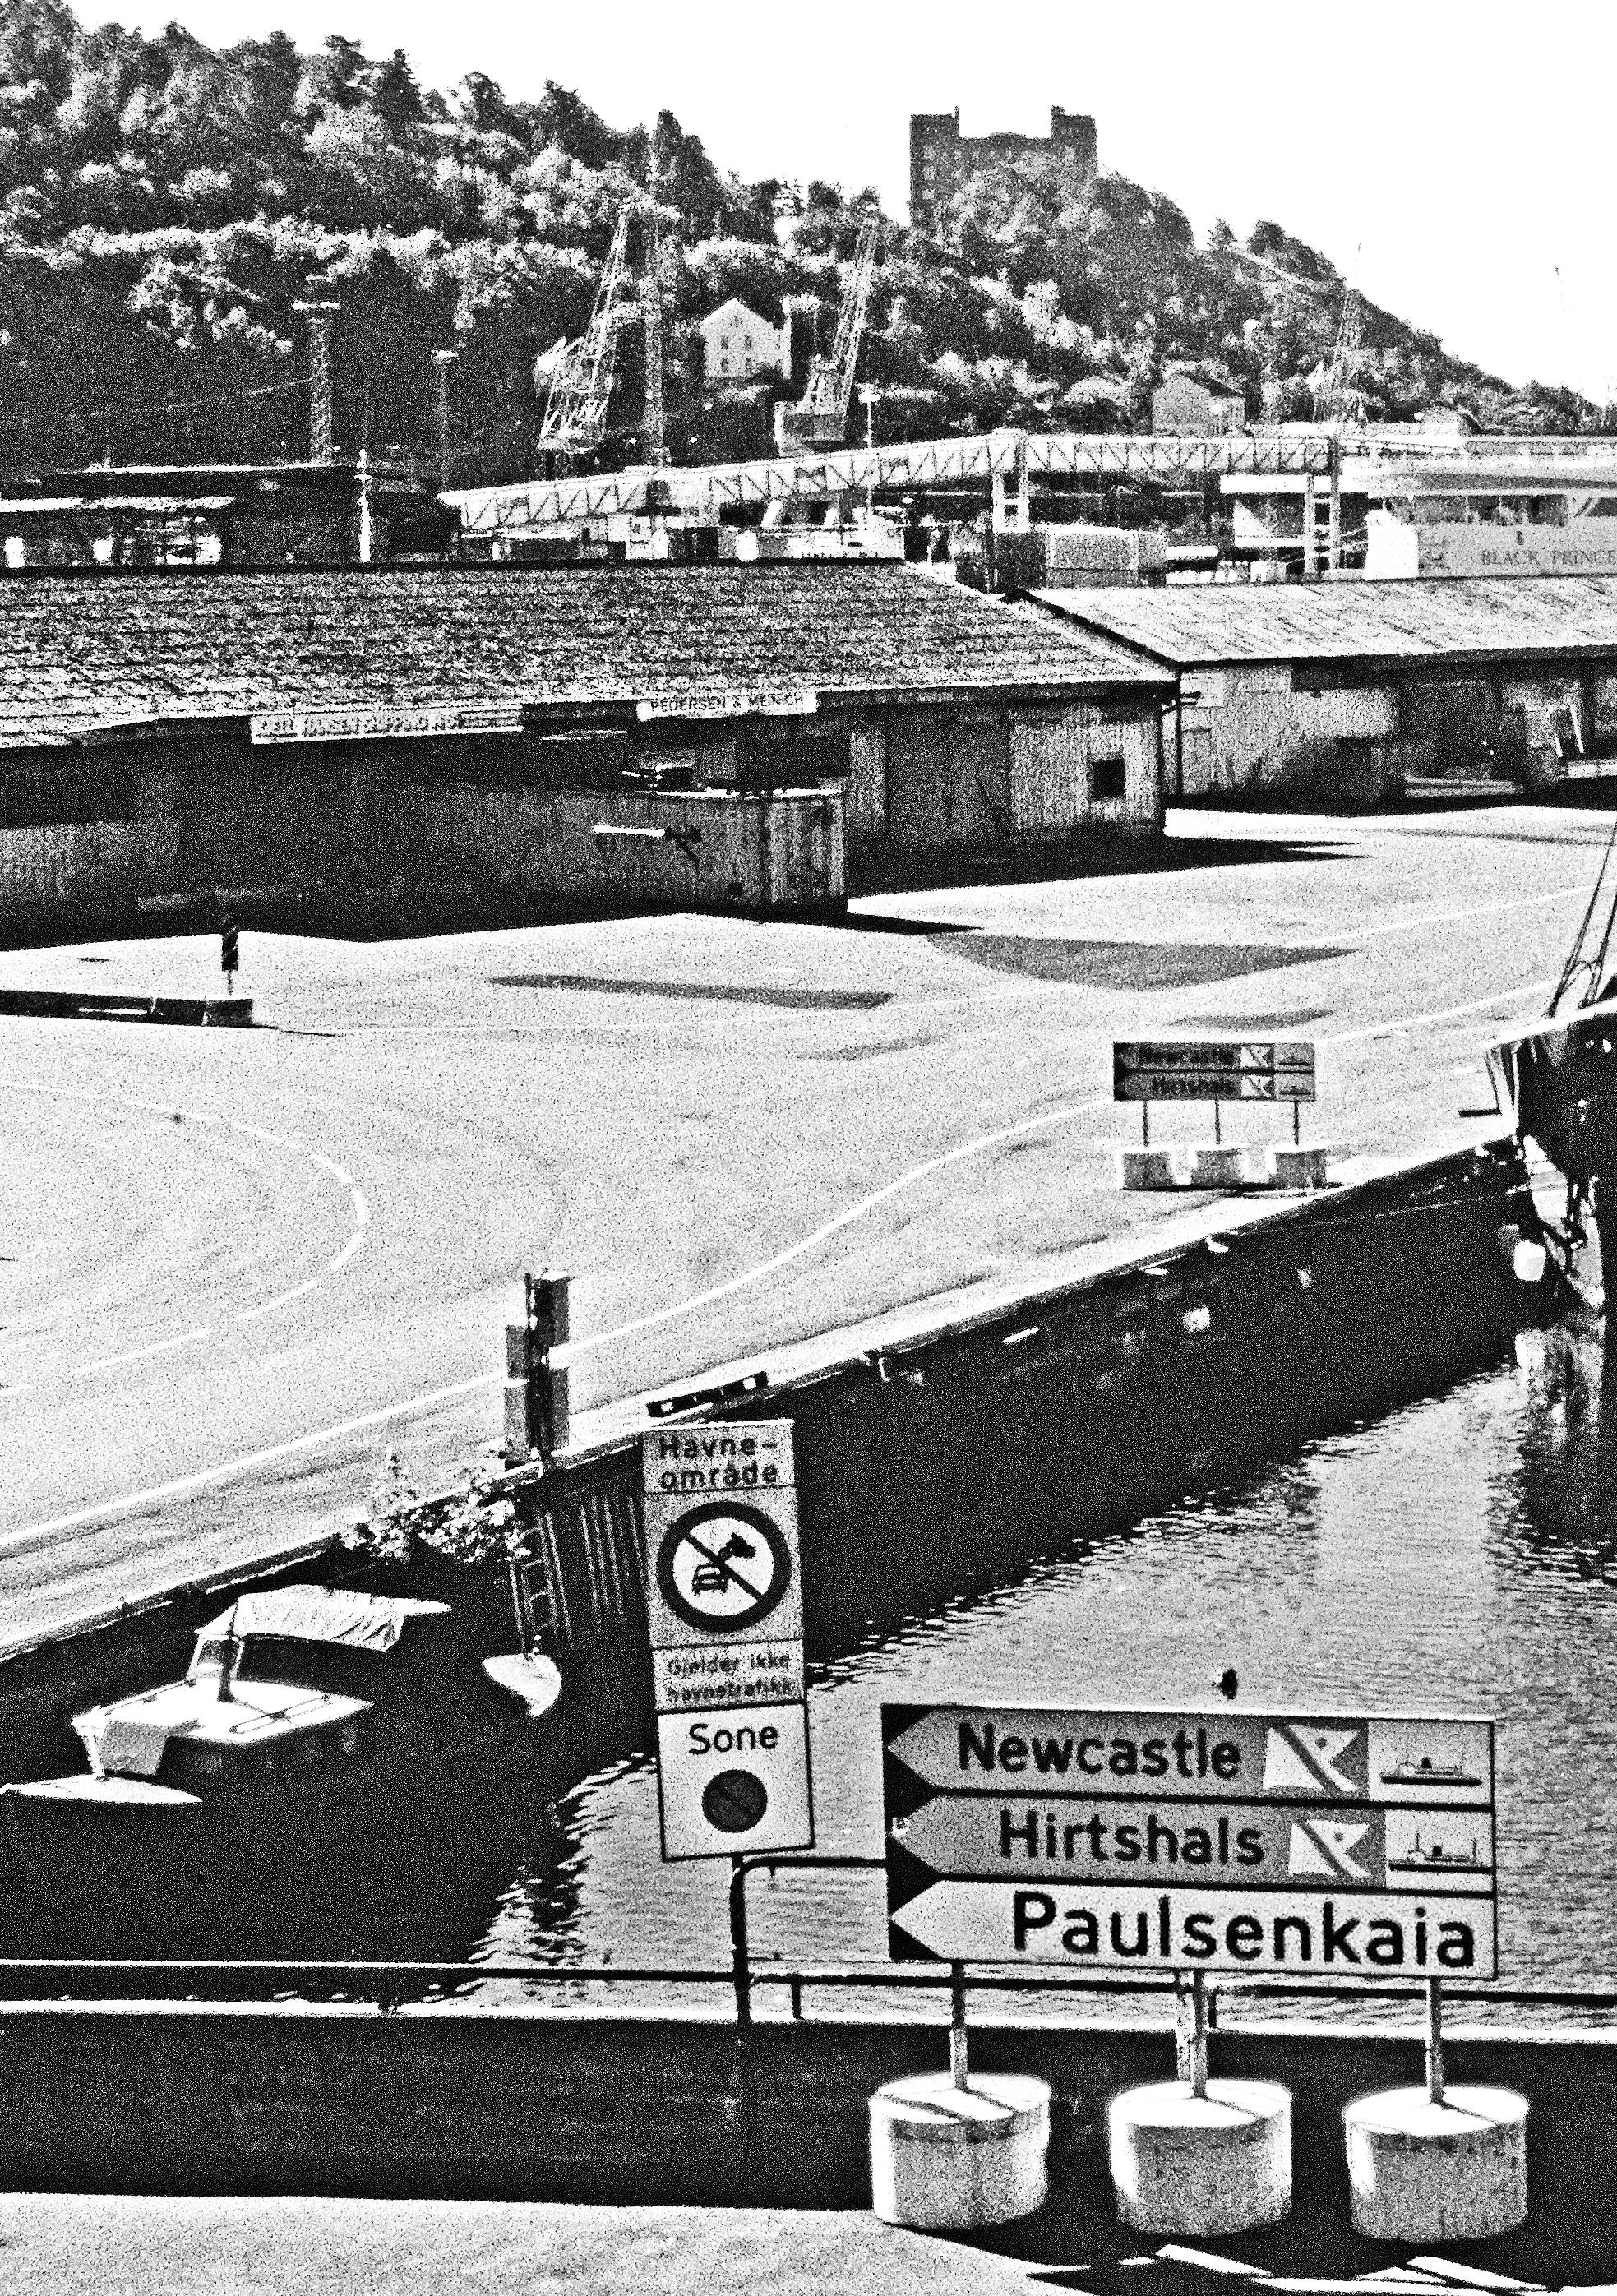 Paulsenkaia-skilt. I 1990 sto det fortsatt et skilt nede ved Akerselvas utløp som henviste deg til Newcastle, Hirtshals og Paulsenkaia. 